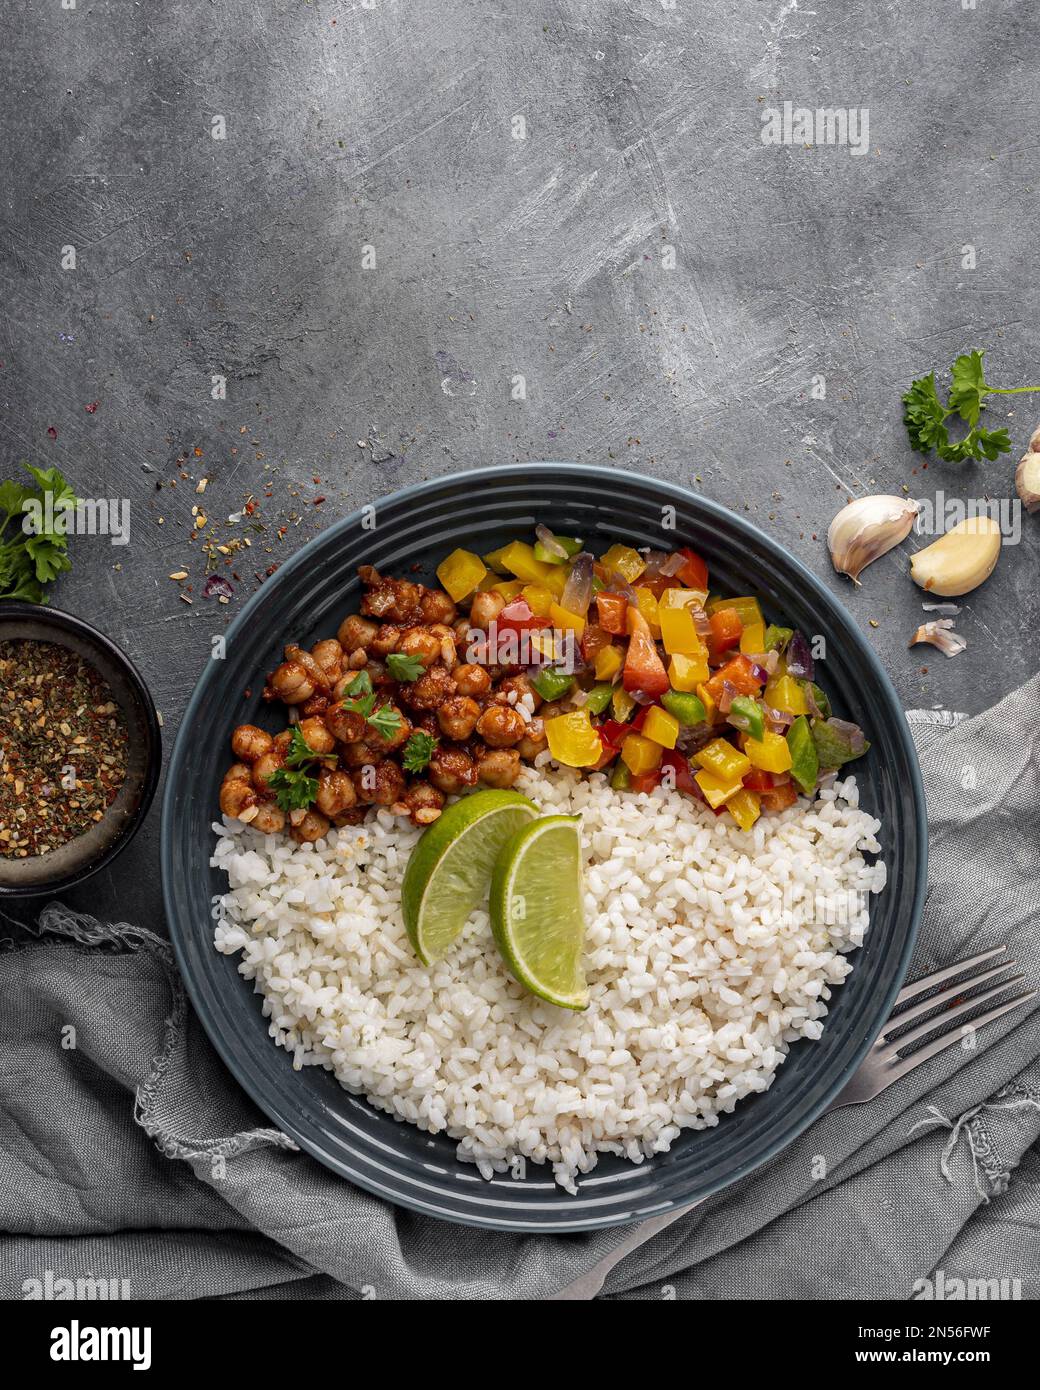 vue de dessus délicieuse cuisine brésilienne avec du riz. Résolution et superbe photo de haute qualité Banque D'Images